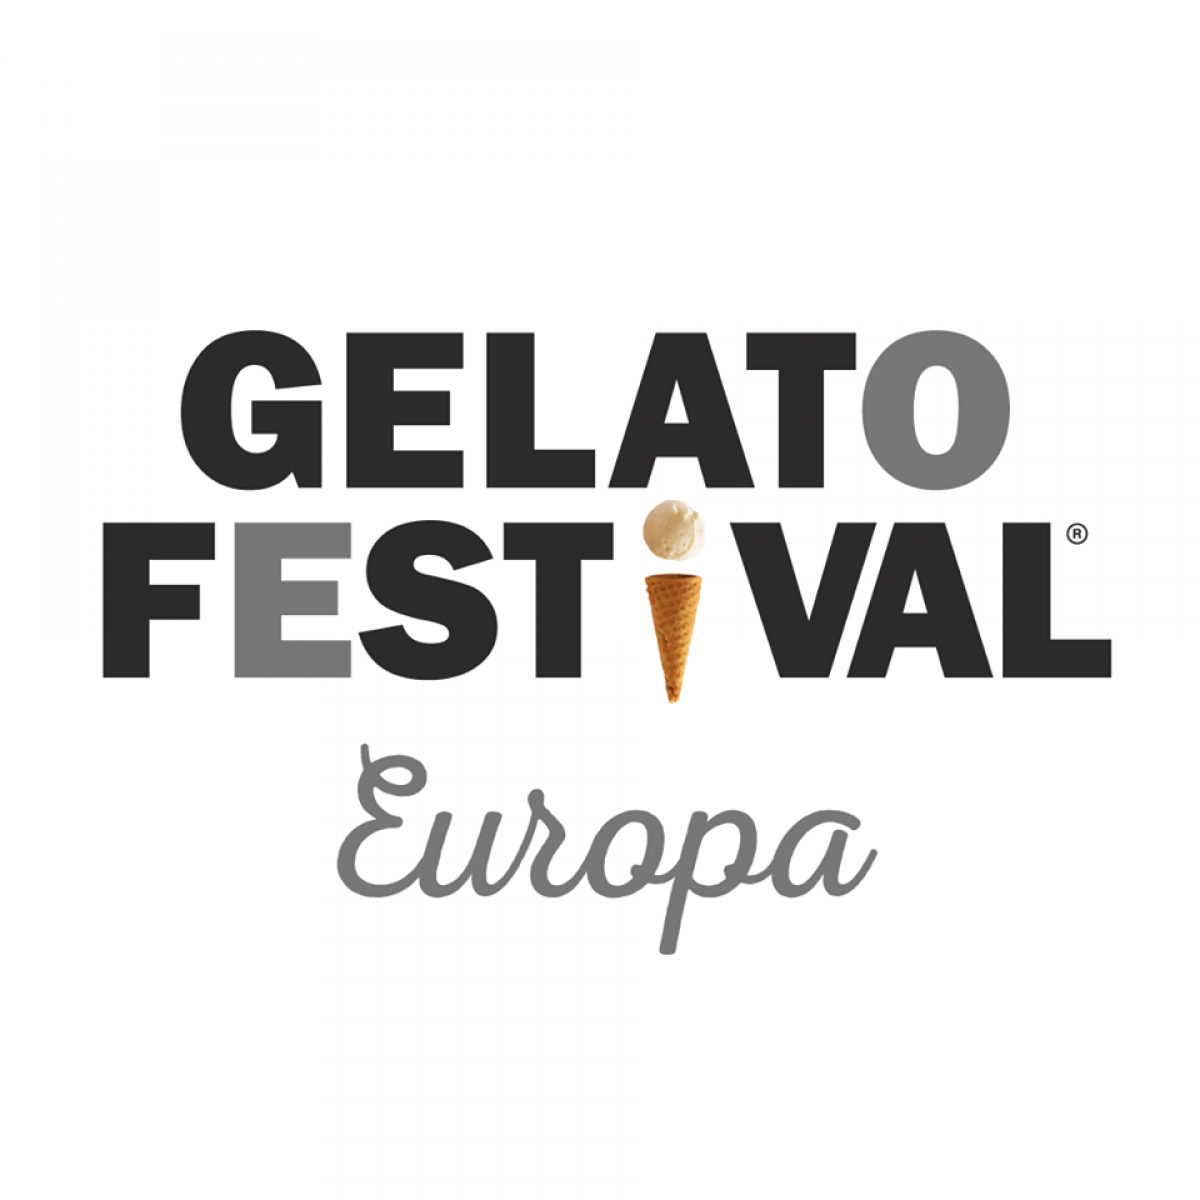 GELATO FESTIVAL 2018 - ALL STARS FIRENZE